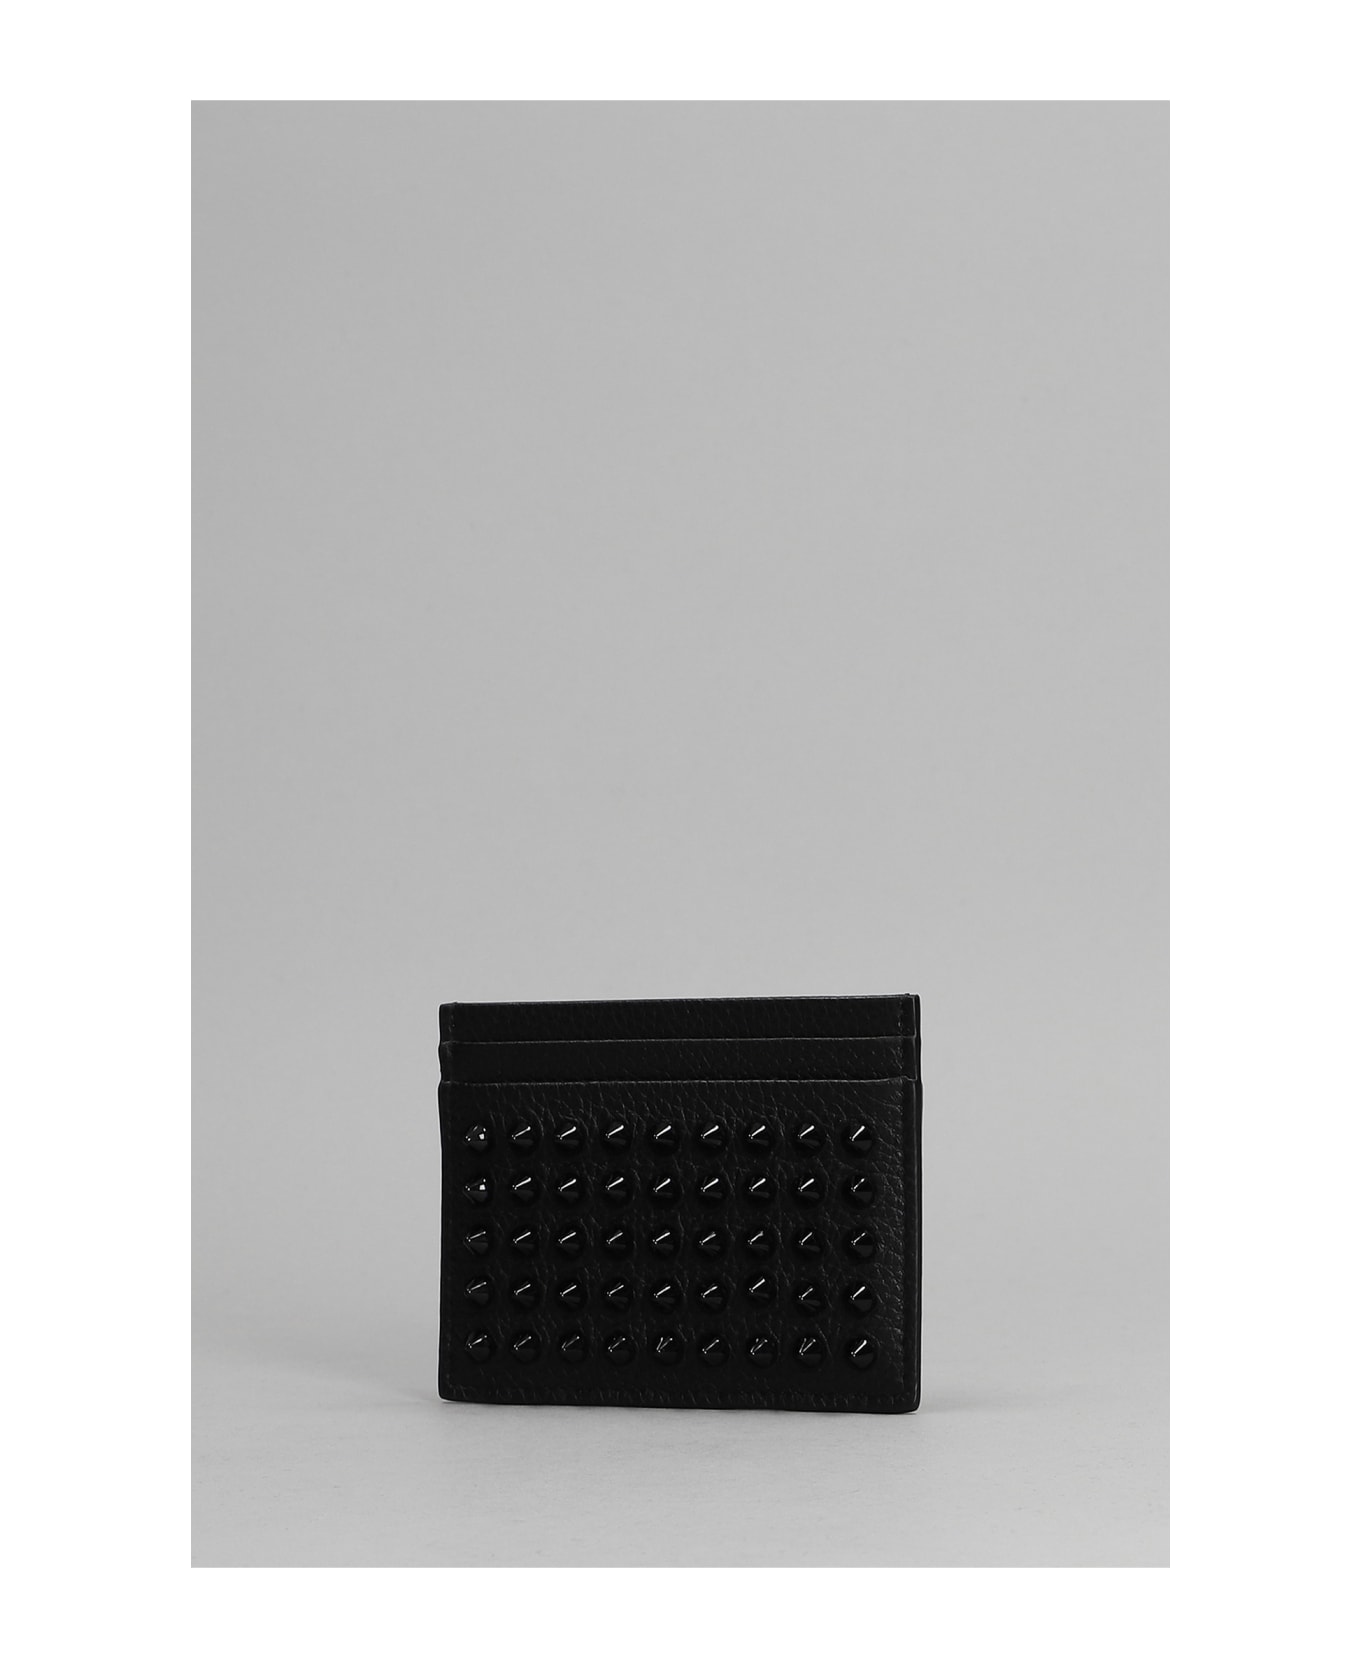 Christian Louboutin Kios Simple Card Holder - Black